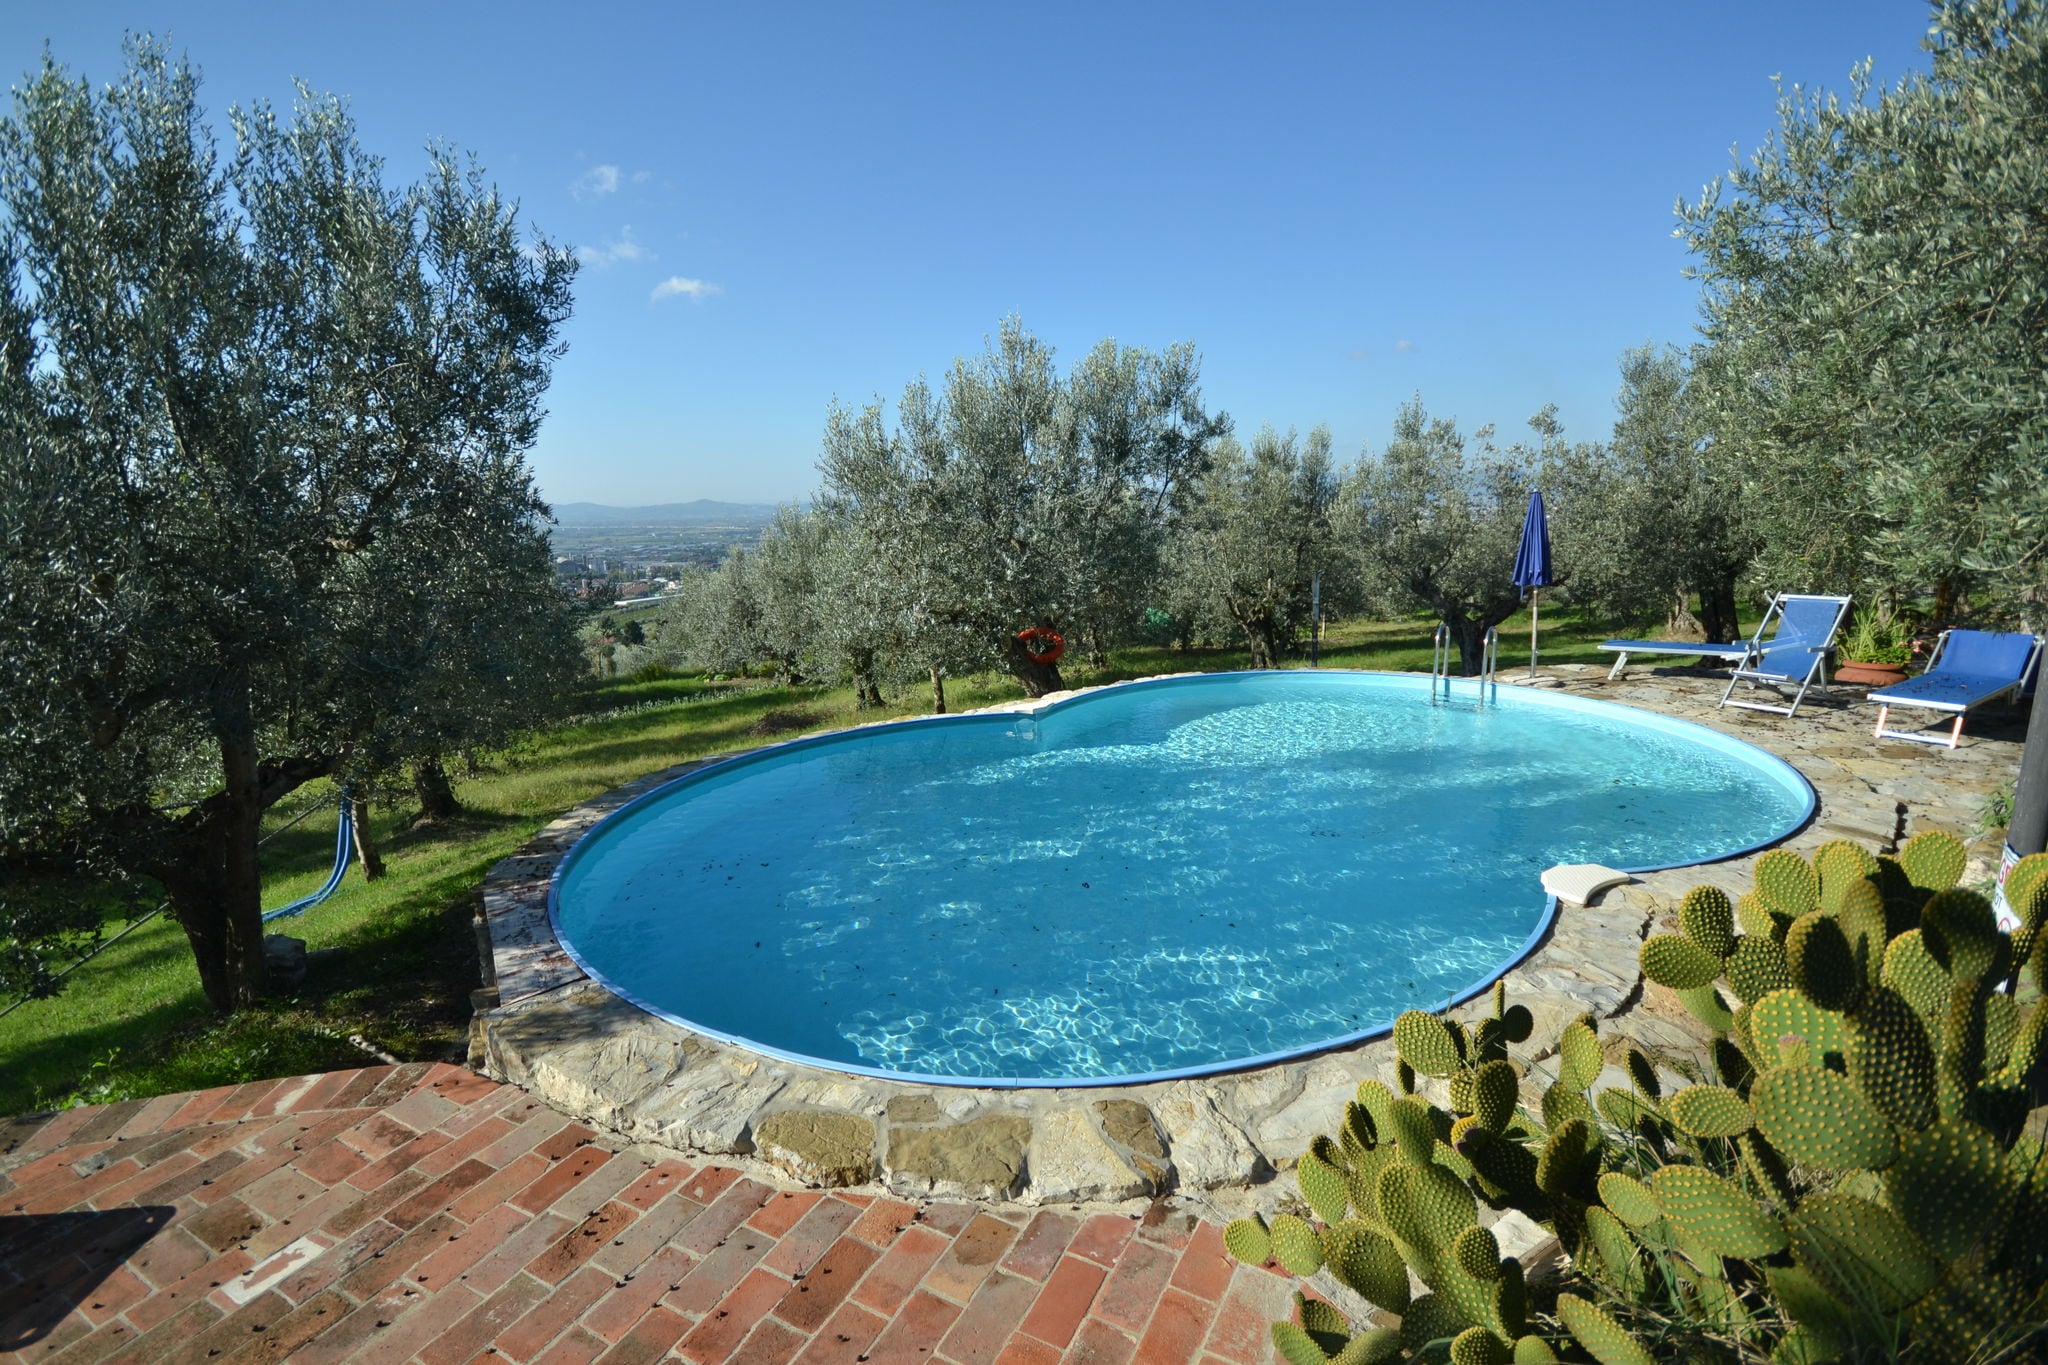 Maison de vacances avec piscine près de Florence